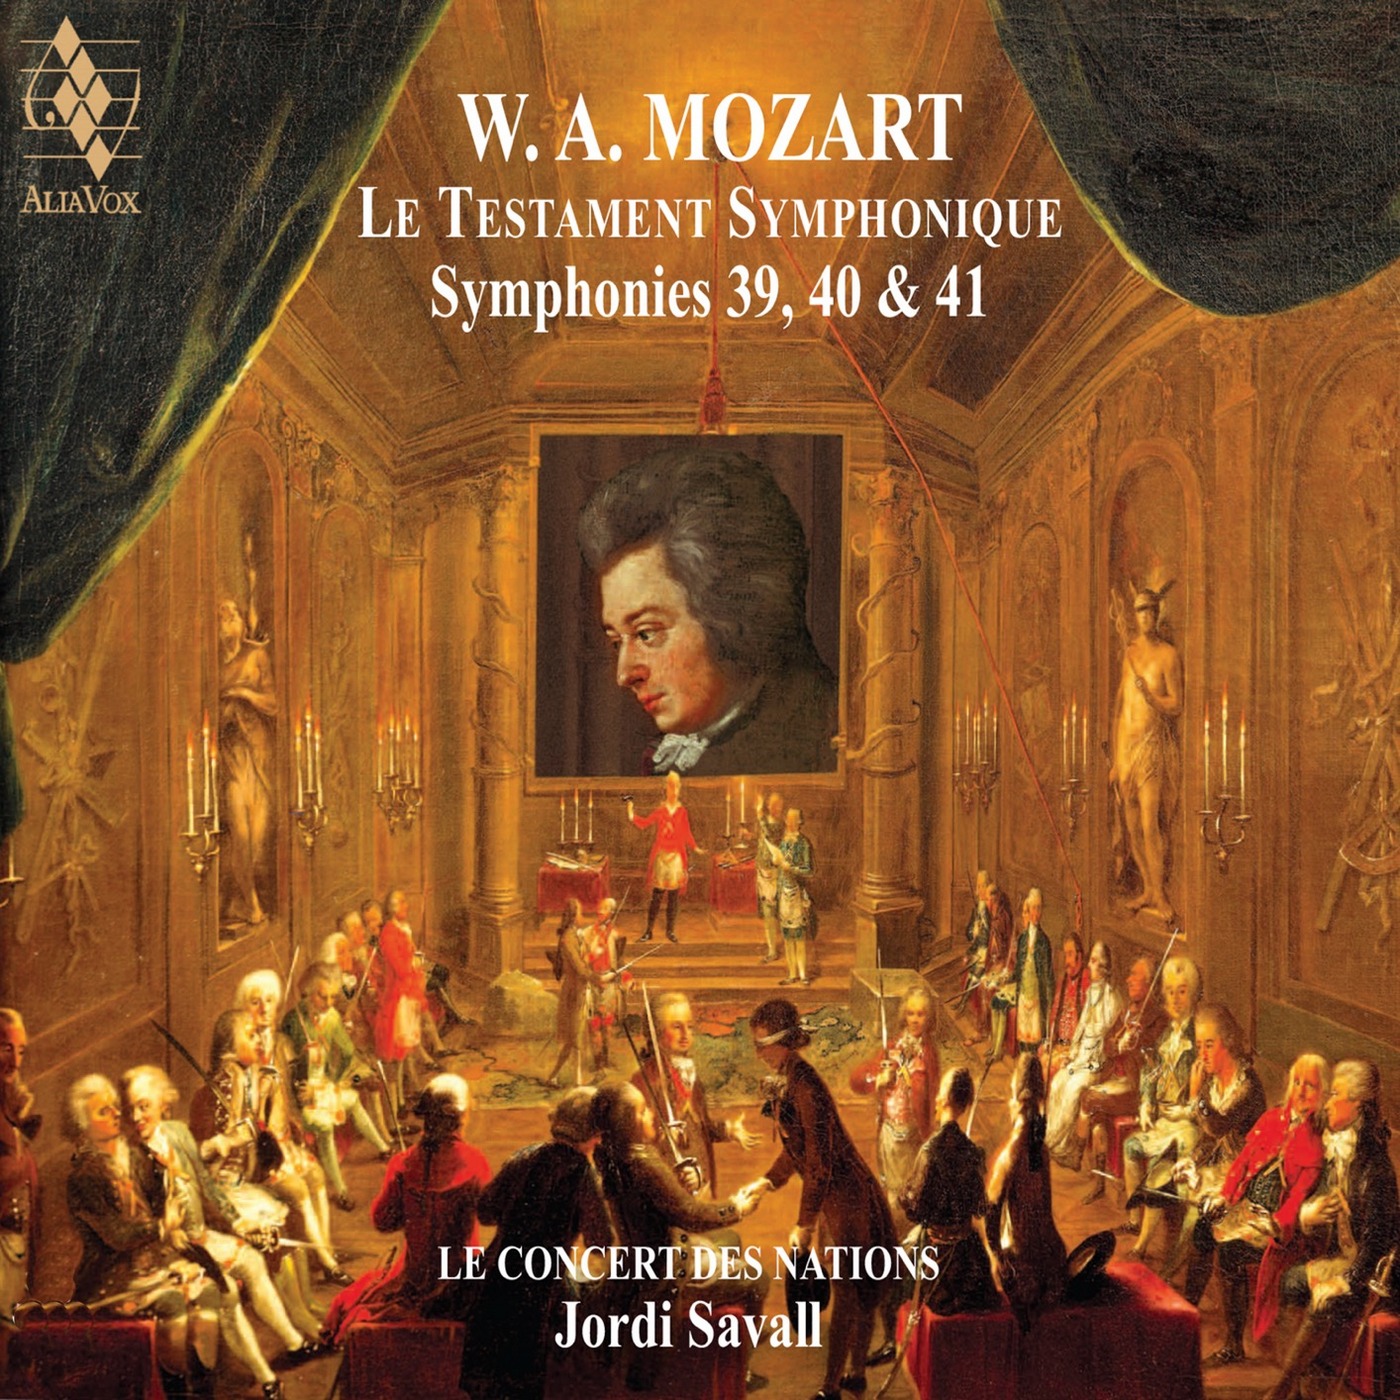 Jordi Savall & Le Concert des Nations - Mozart: Le Testament Symphonique (2019) [FLAC 24bit/88,2kHz]